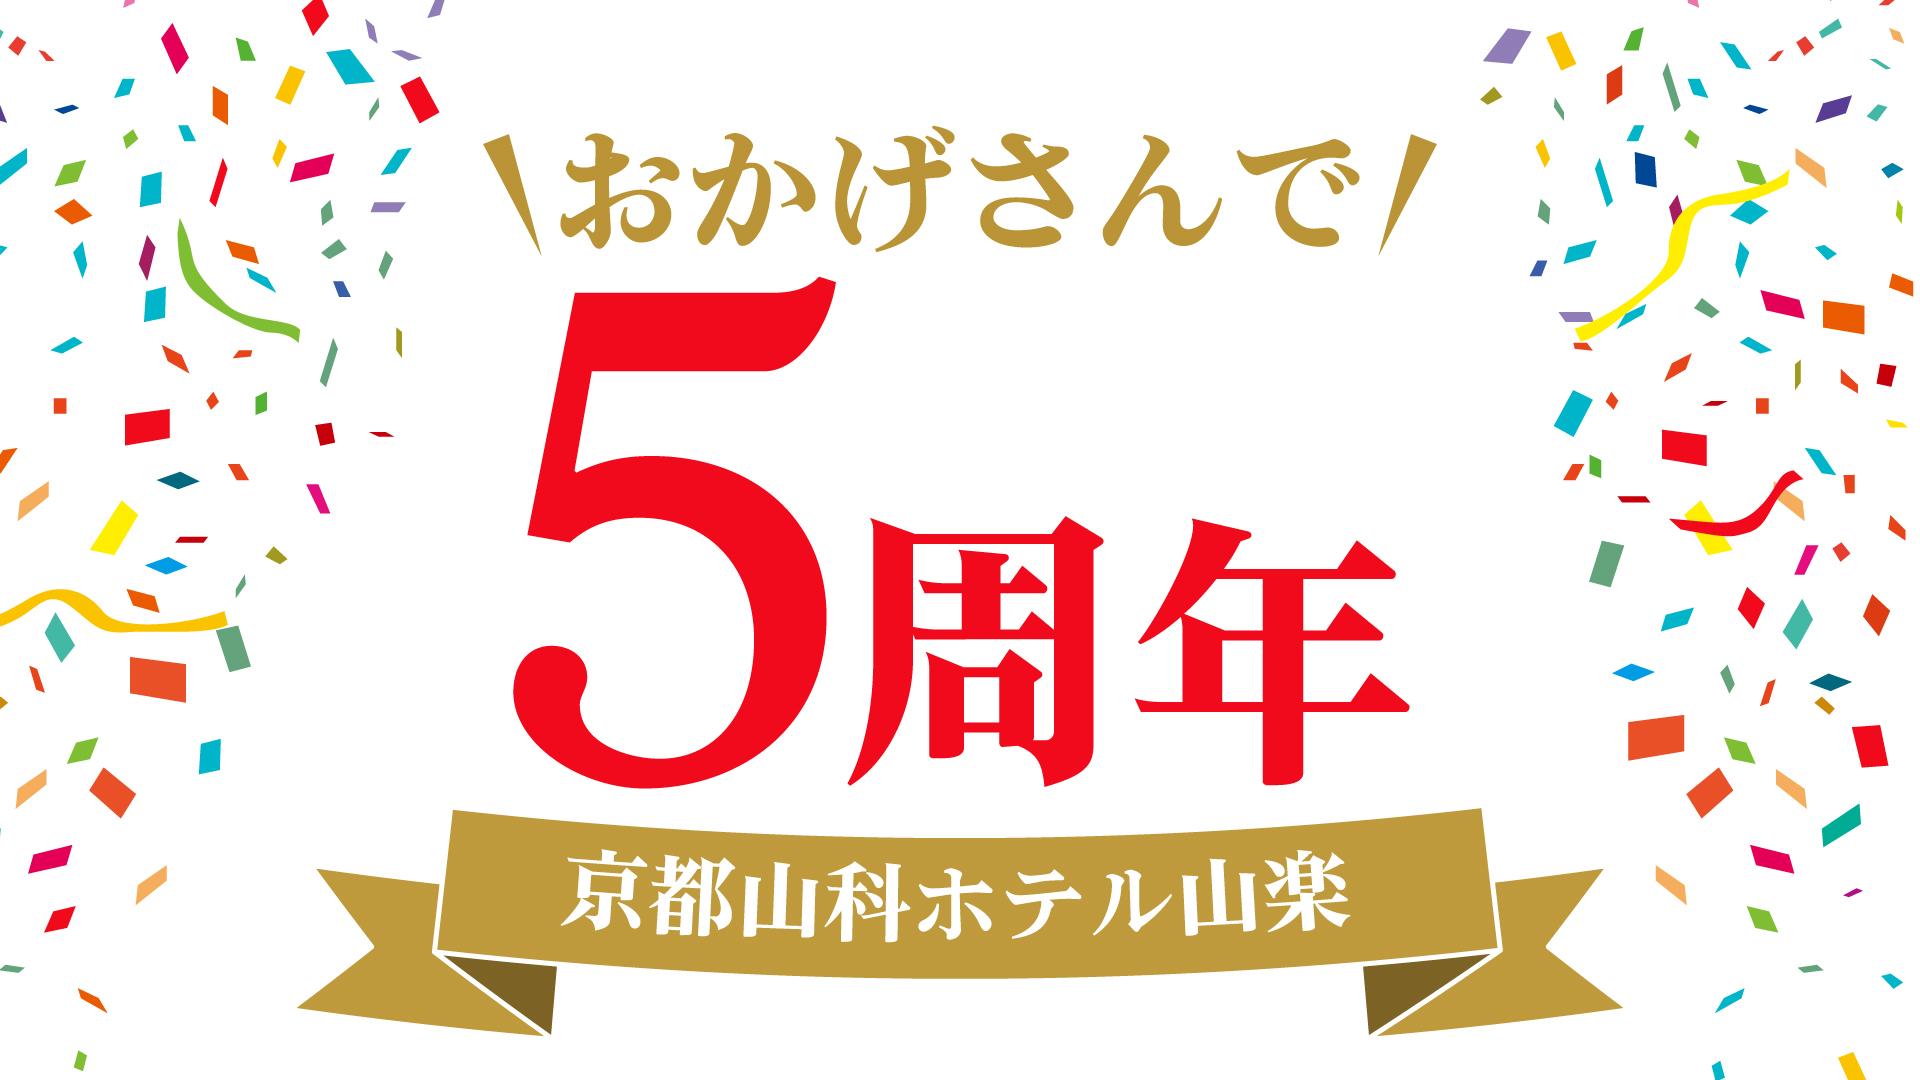 【京都山科 ホテル山楽】開業5周年の感謝を込めて
特別企画『5thアニバーサリー』を開催いたします！